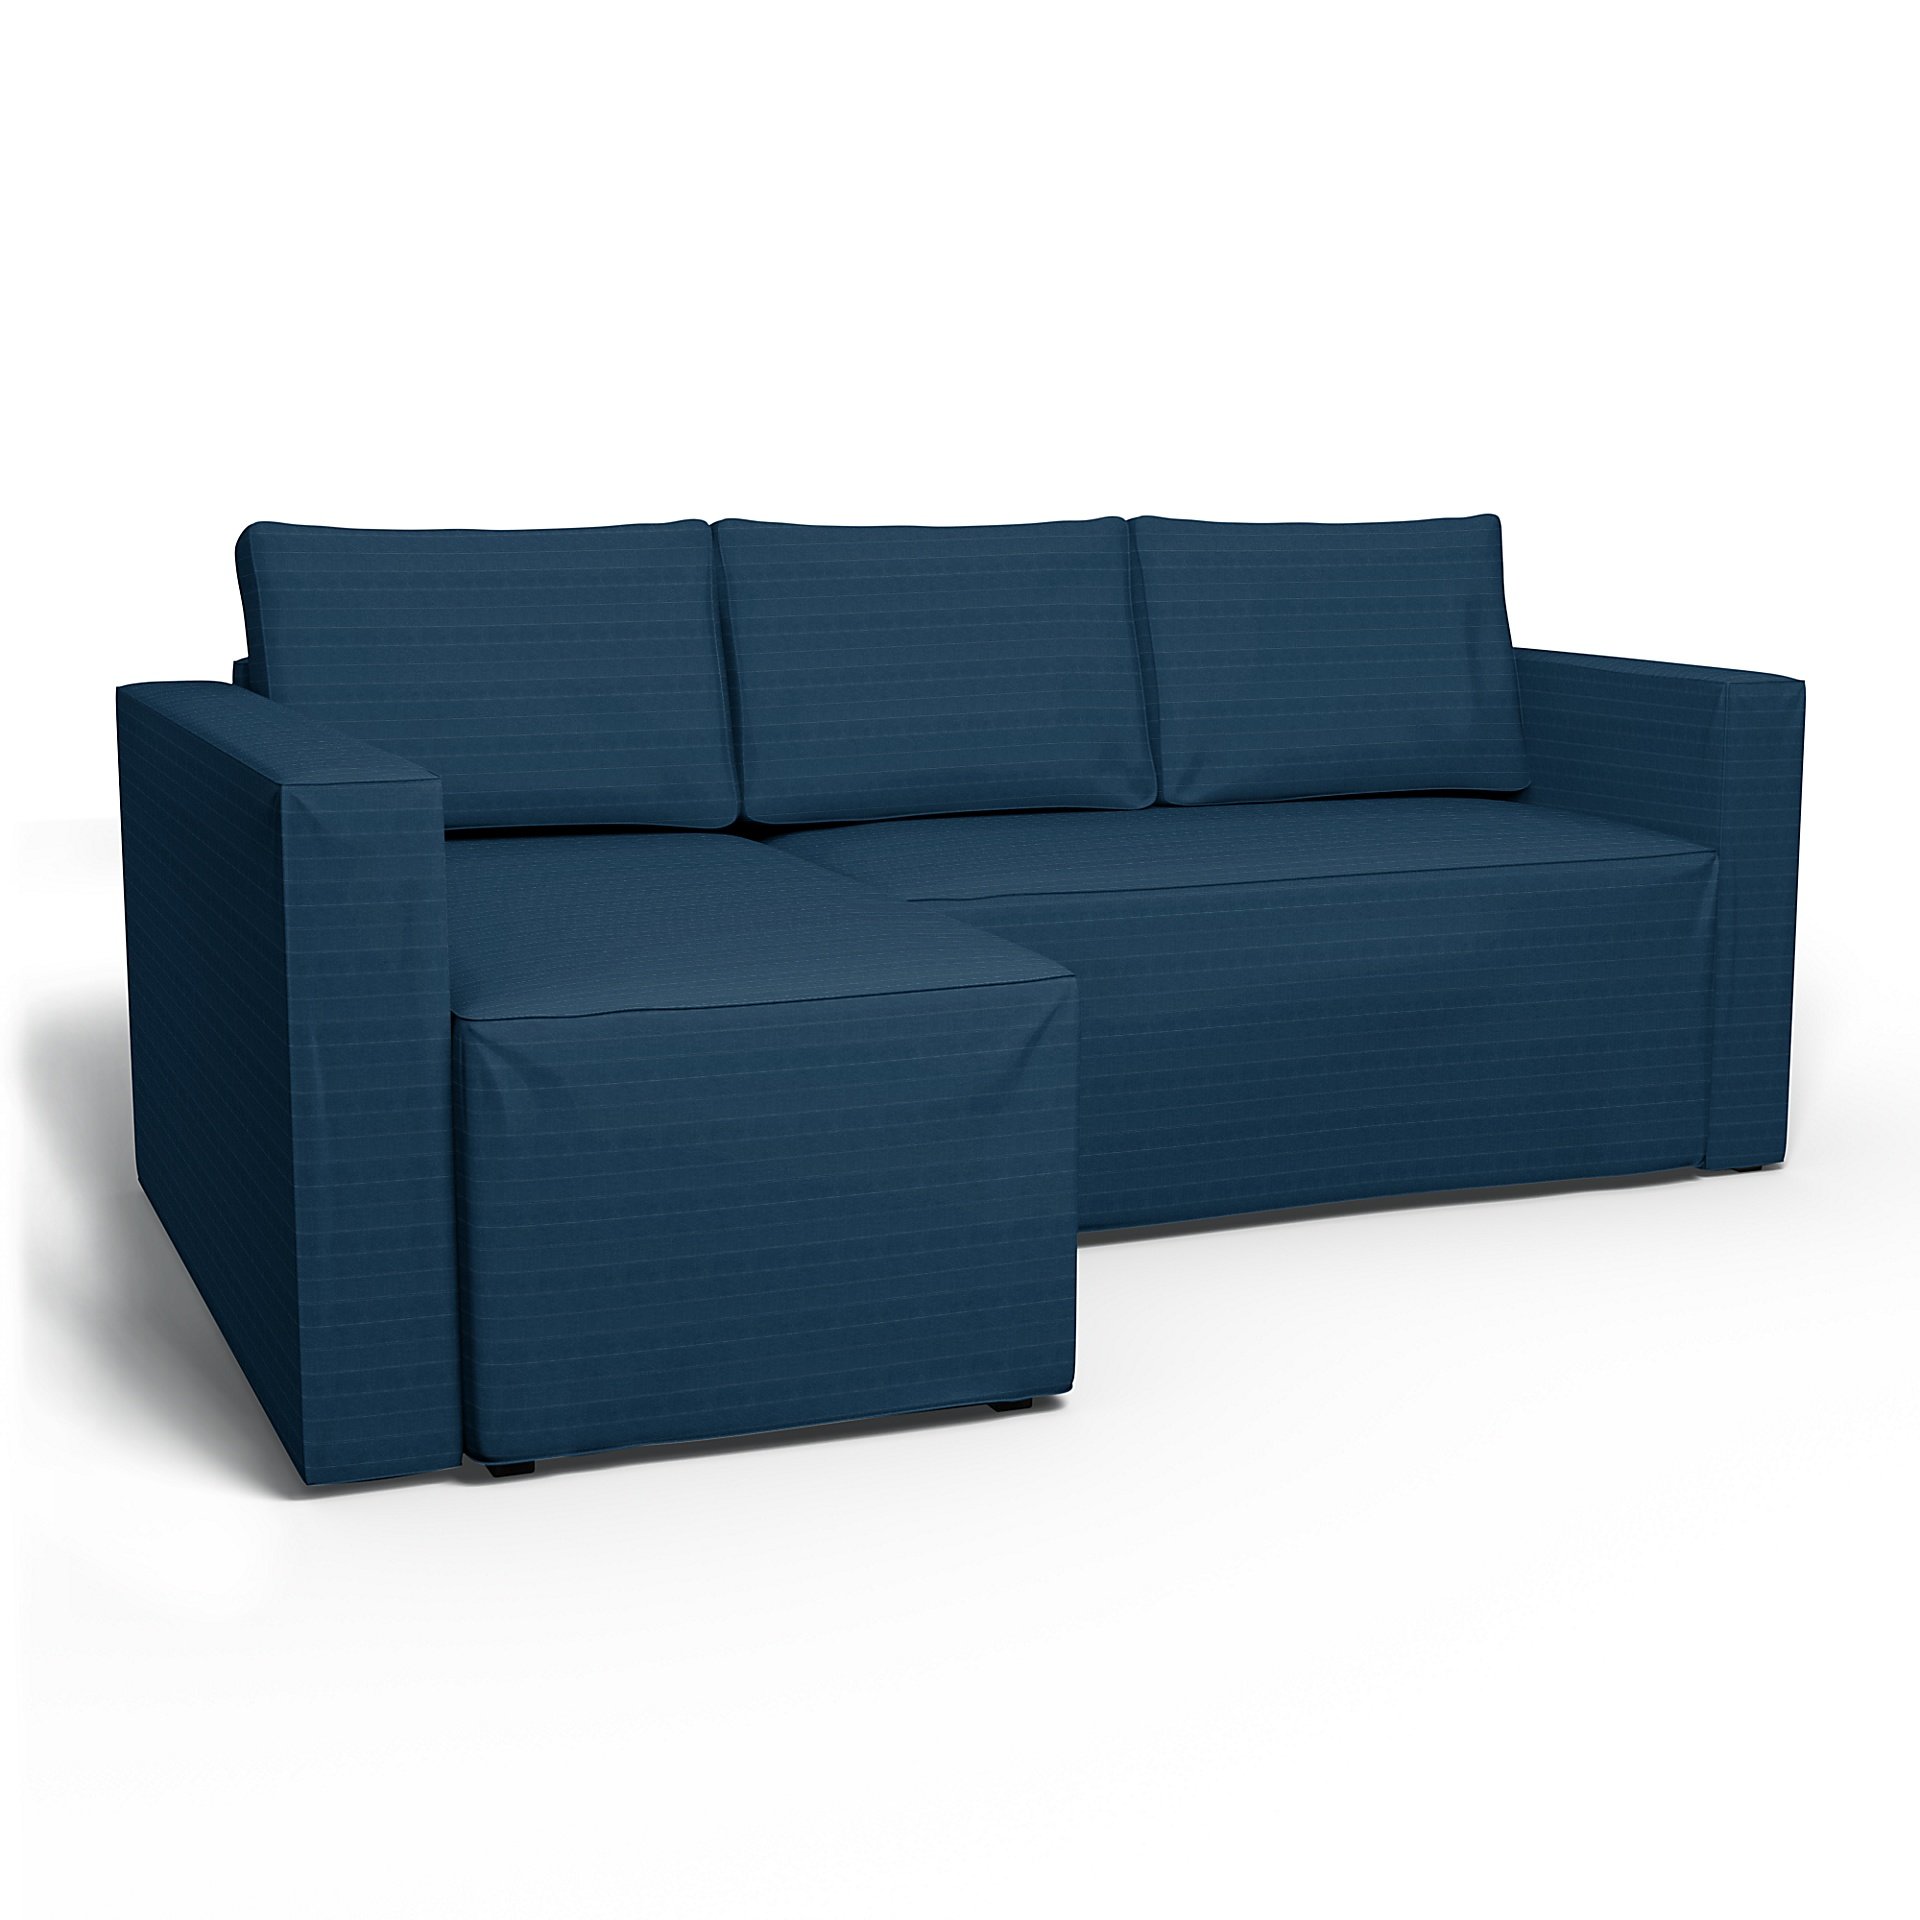 IKEA - Manstad Sofa Bed with Left Chaise Cover, Denim Blue, Velvet - Bemz